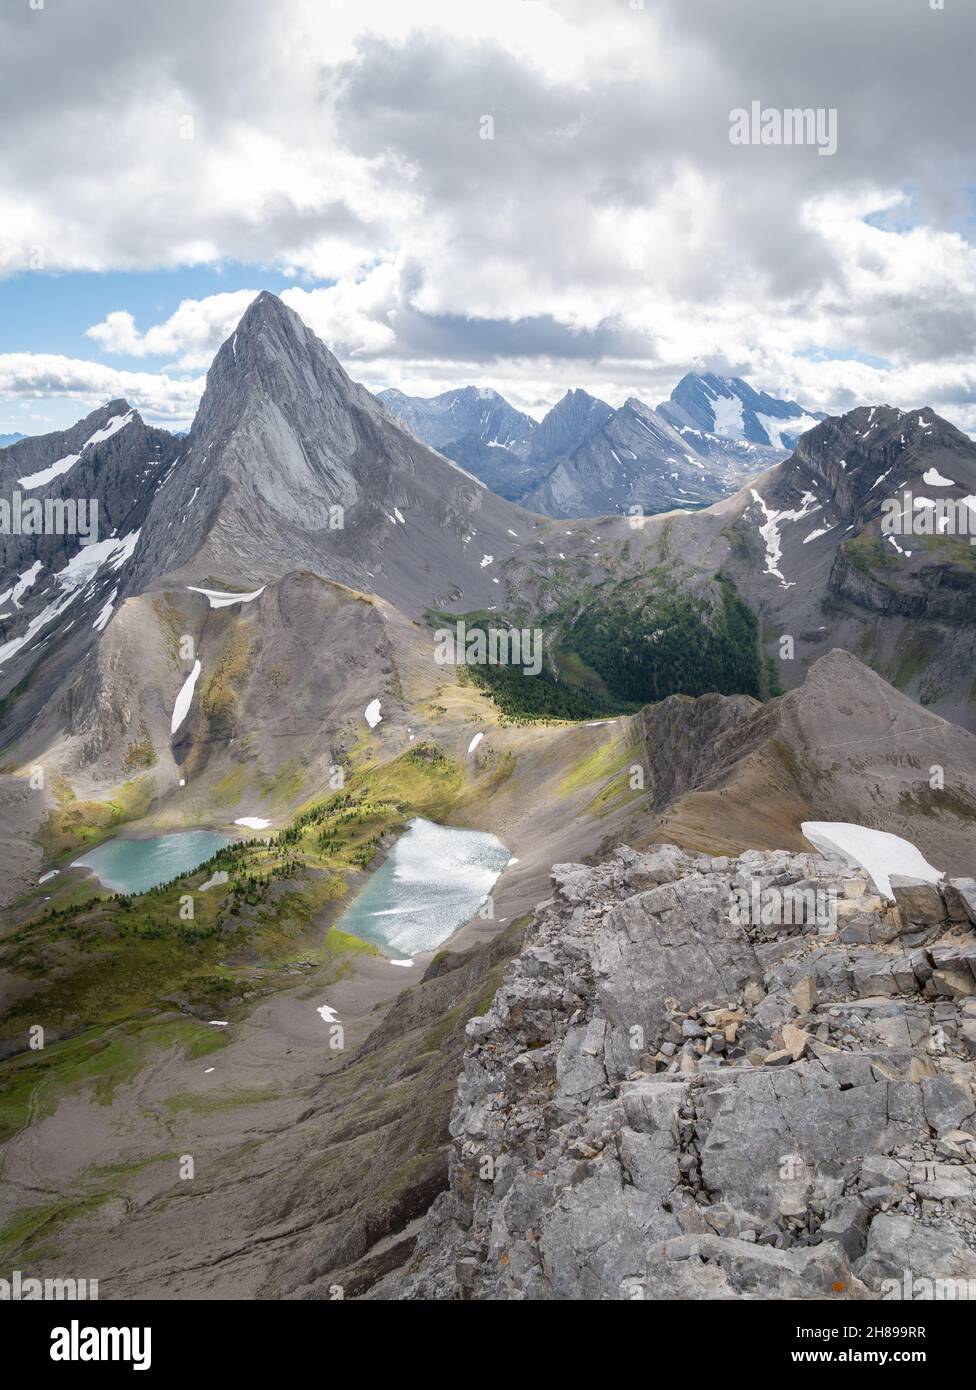 vue verticale alpine en couleurs automnales avec pic dominant et un peu de neige, Rocheuses canadiennes, Canada Banque D'Images